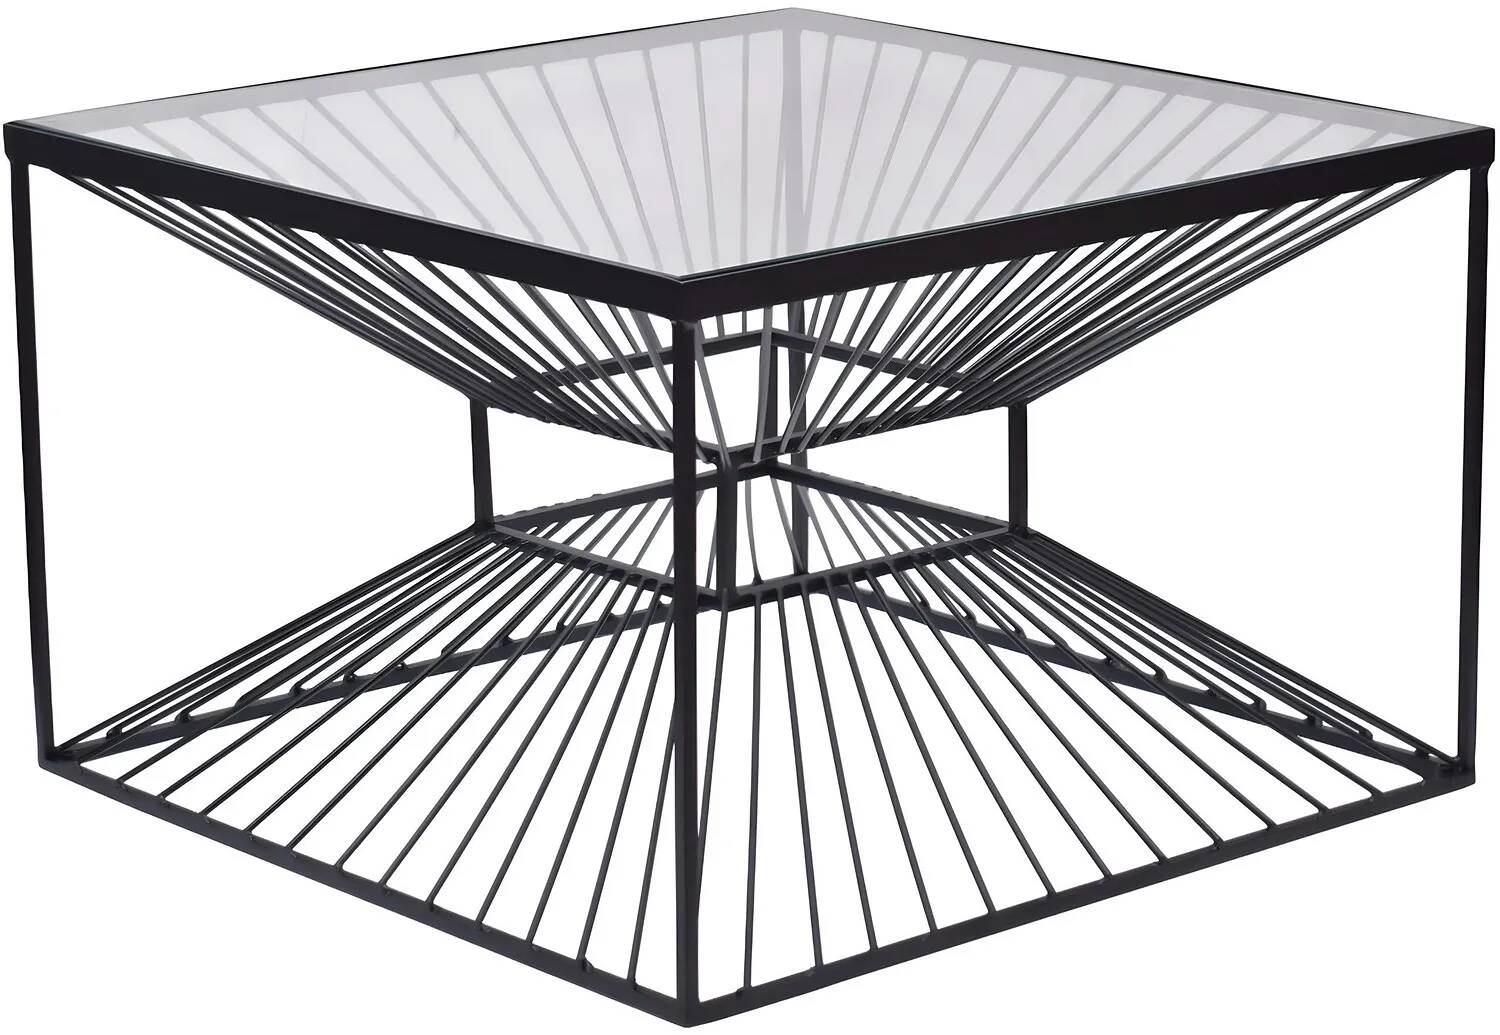 Table basse design en verre transparent et métal noir